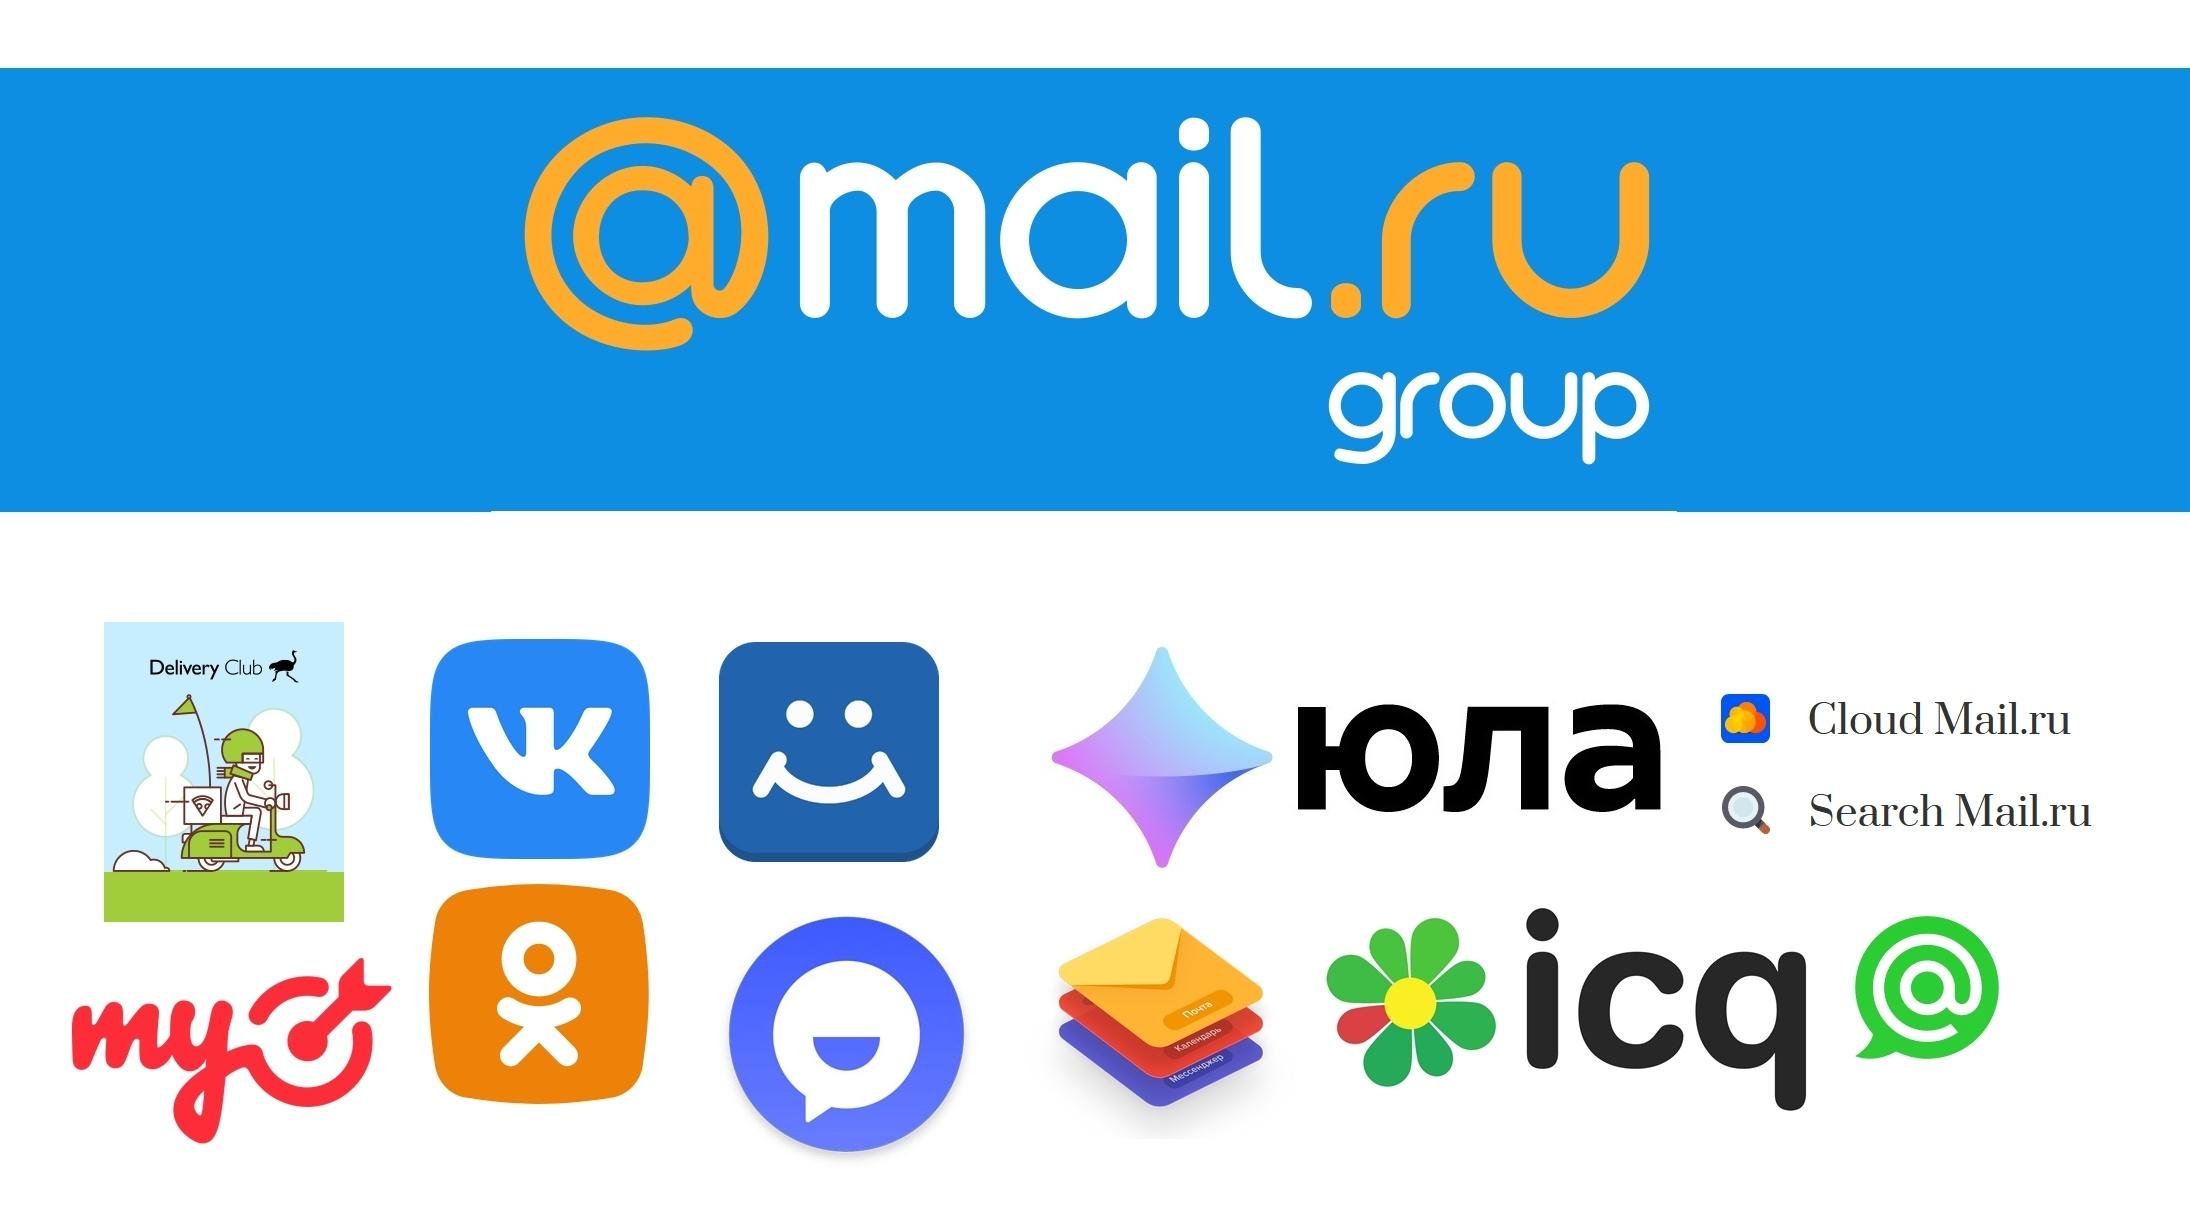 Связь и технологии работают на Mail.ru с поддержкой EMSA!